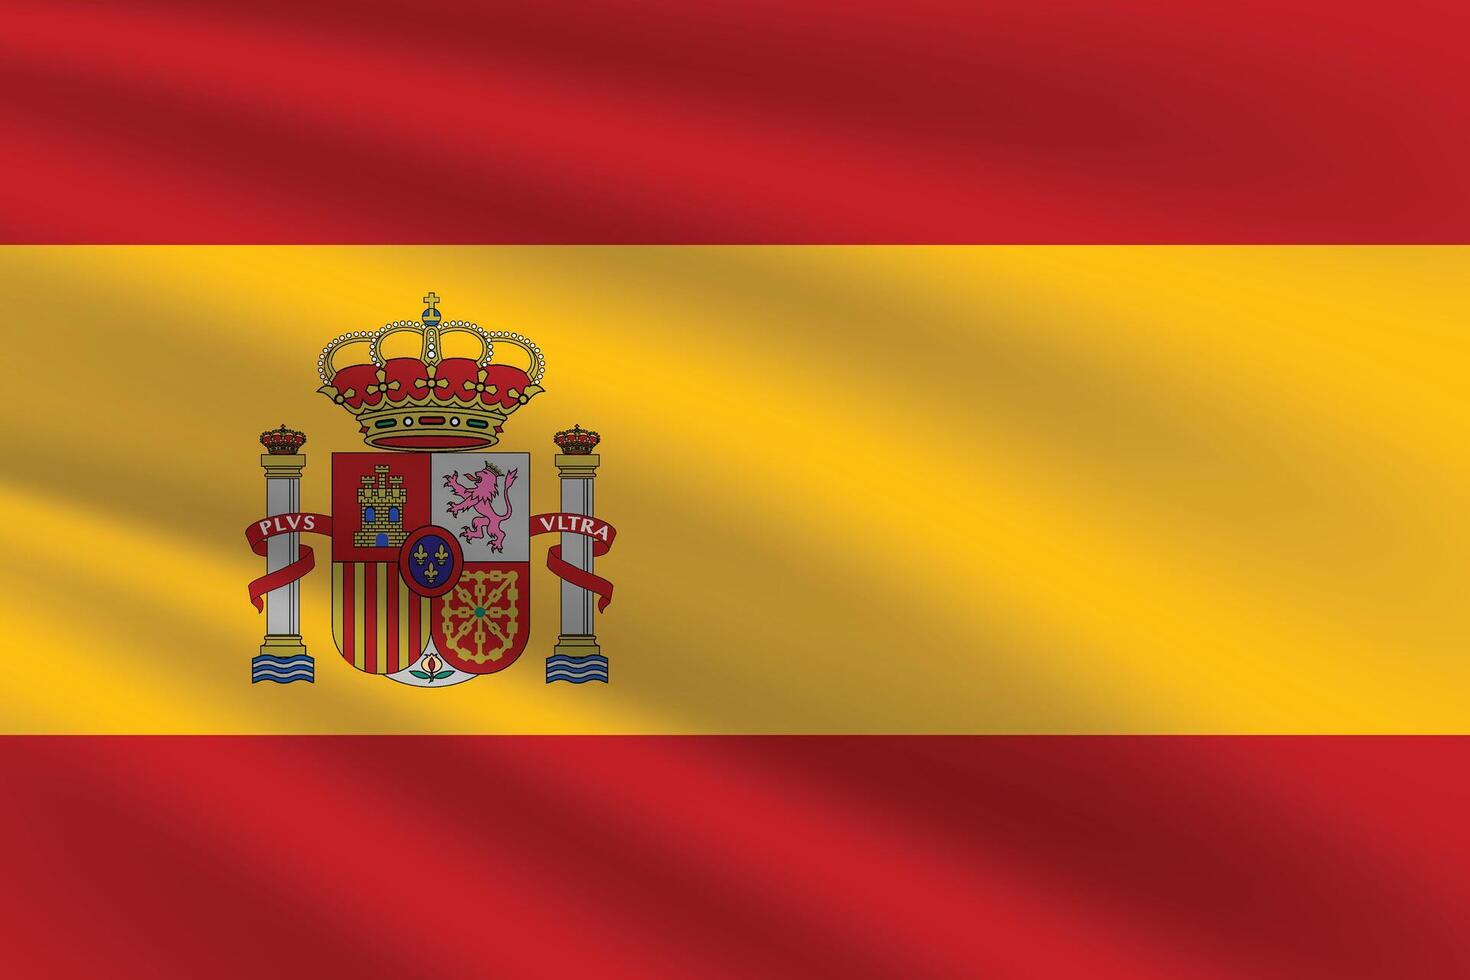 nationale drapeau de Espagne. Espagne drapeau. agitant Espagne drapeau. vecteur